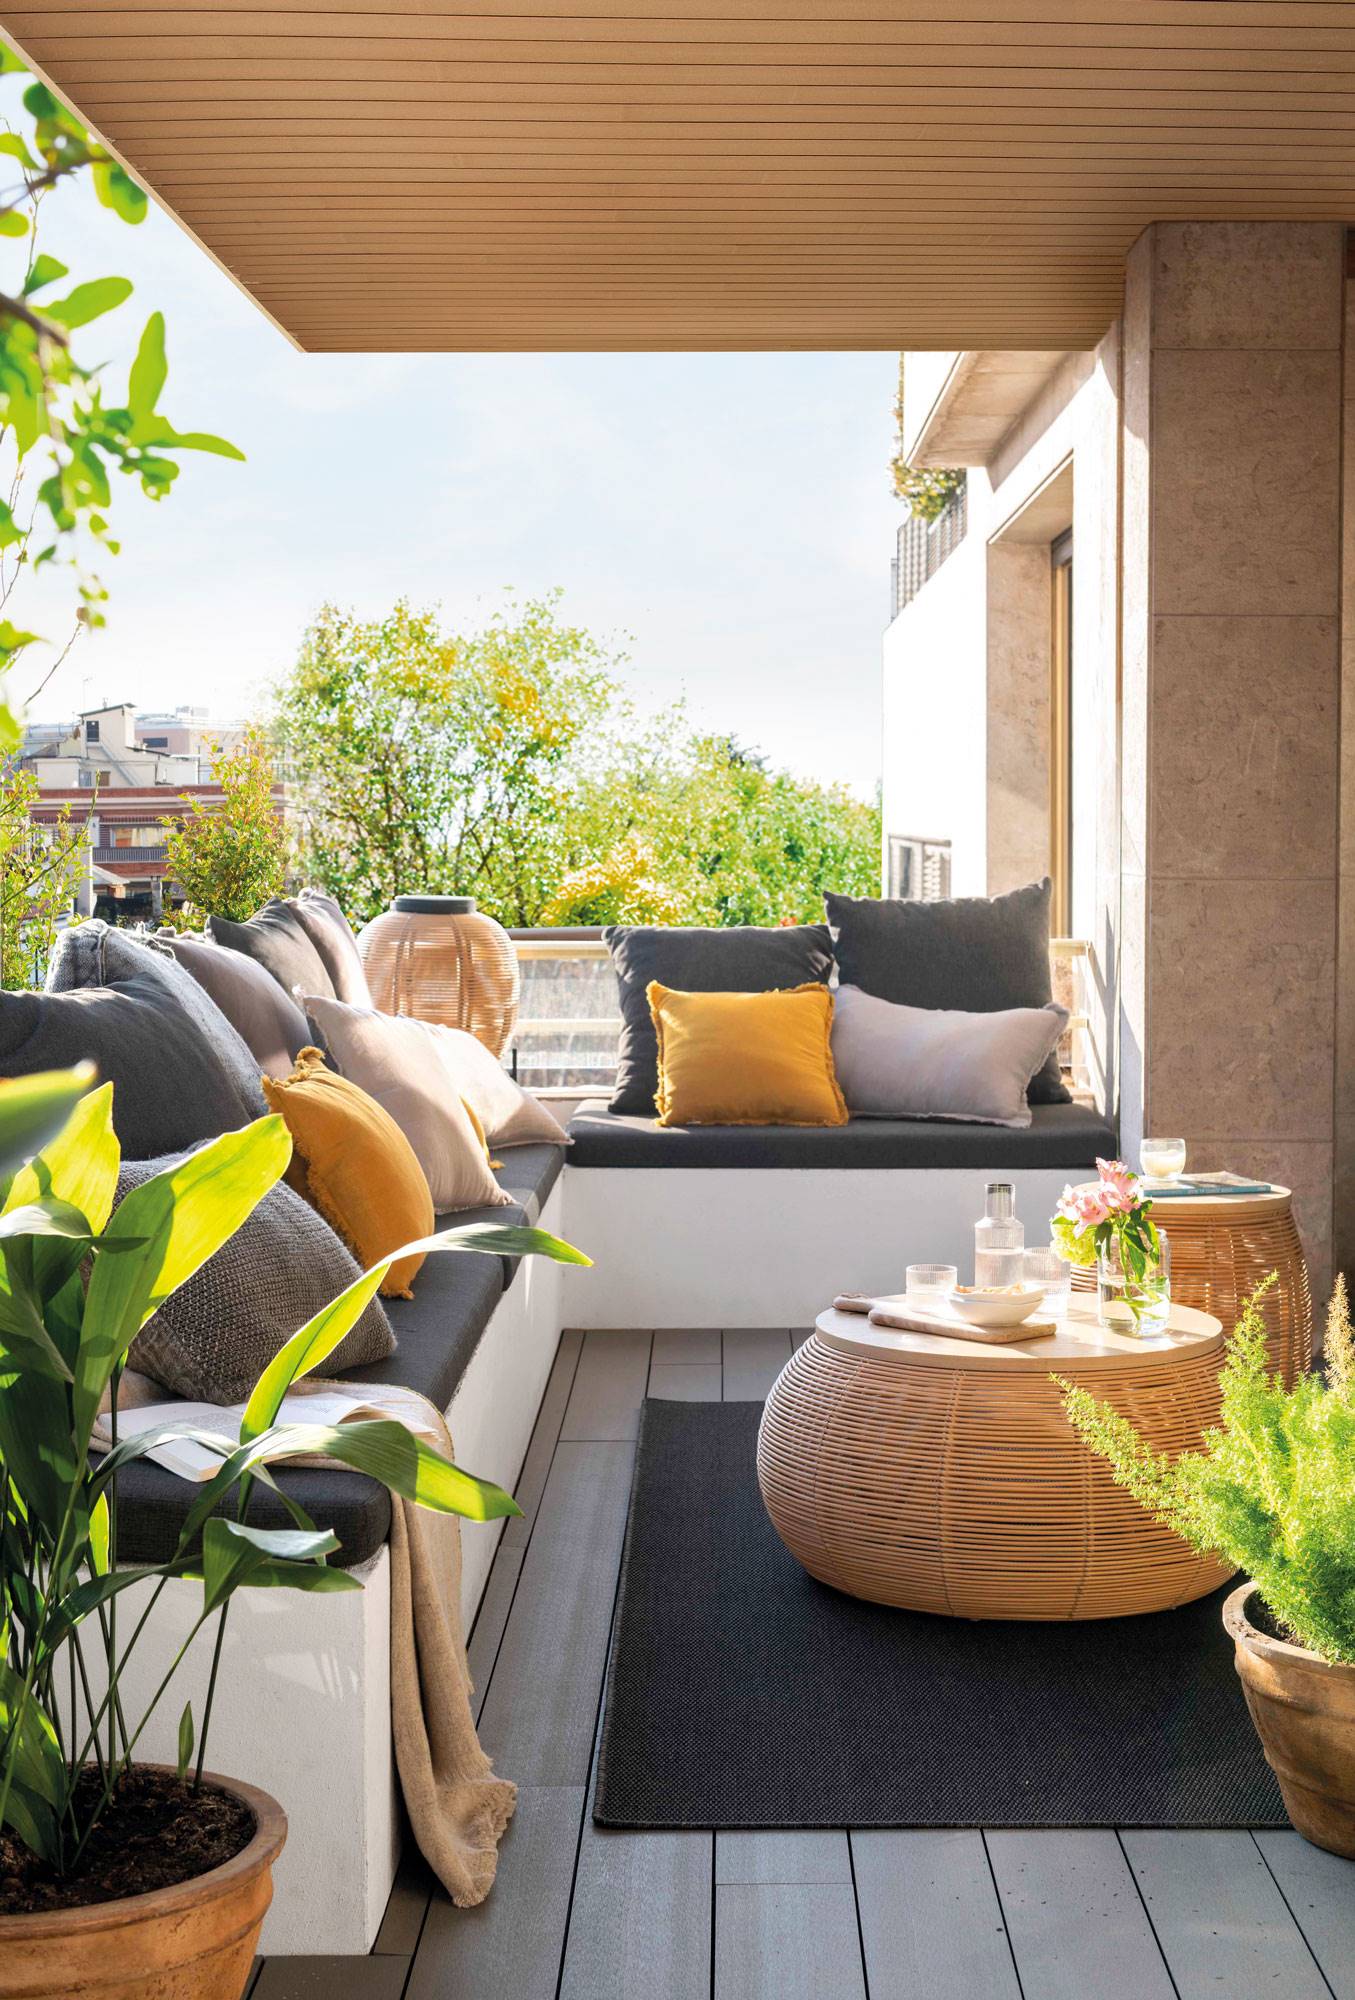 Una mini terraza en L en un balcón con zona chill out y estilo moderno. 